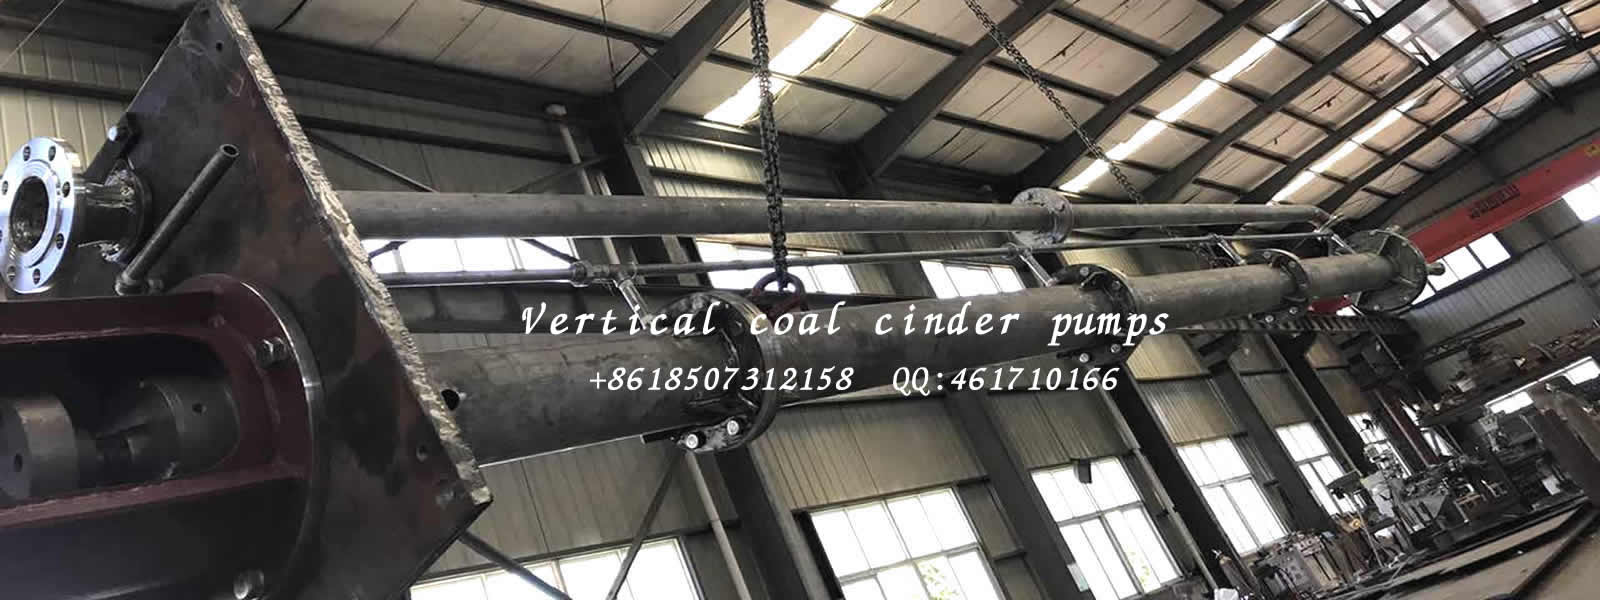 vertical sump pump